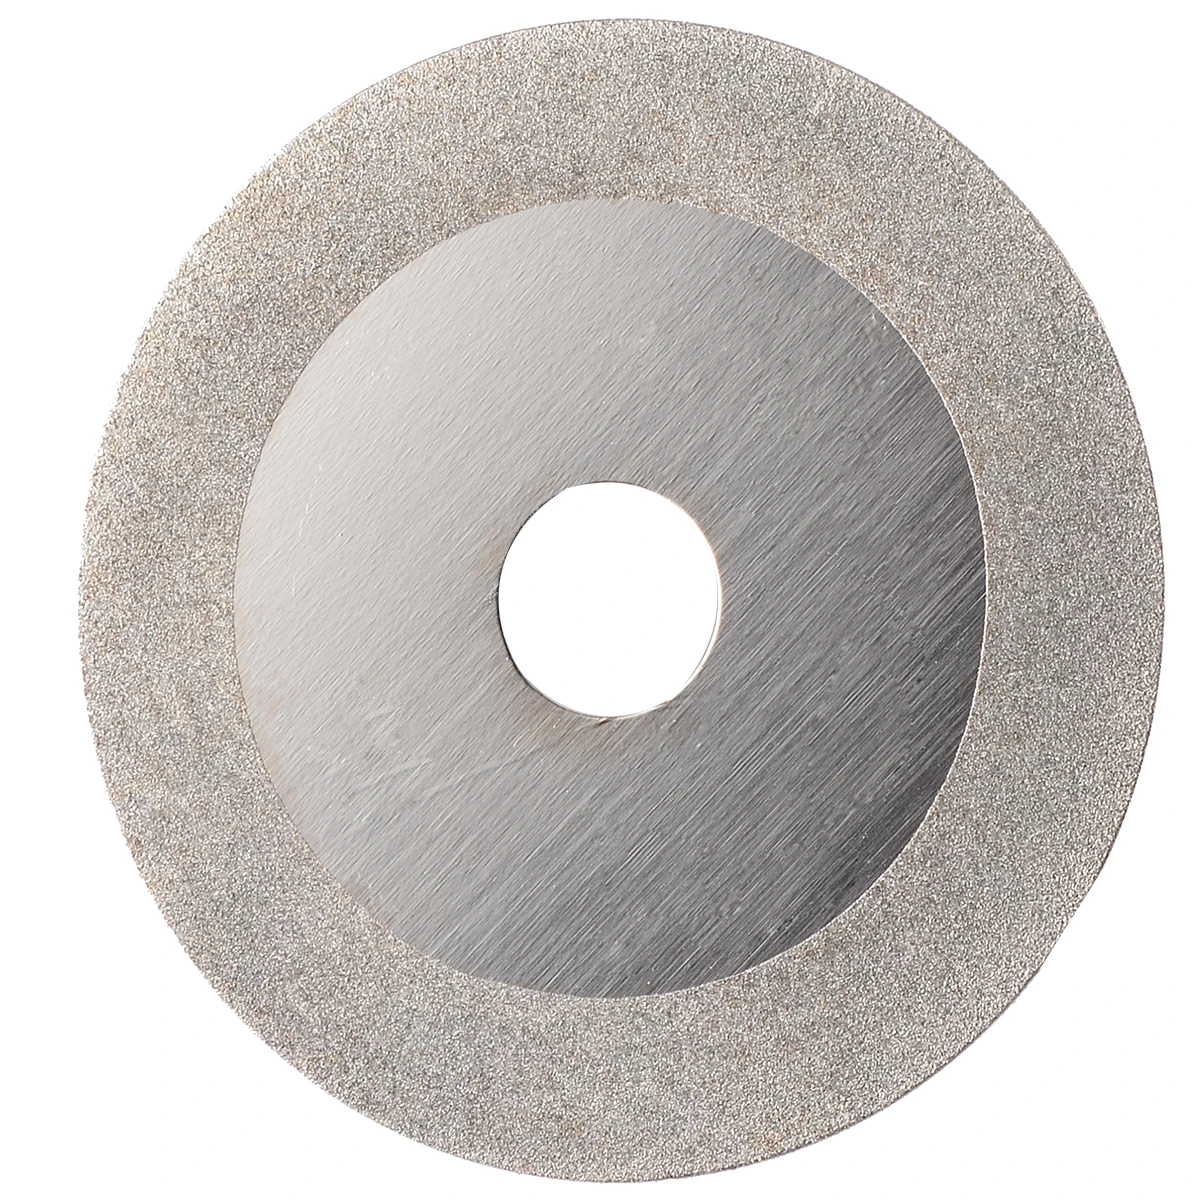 4 дюйма алмазный шлифовальный круг диск для углового шлифовального диска мини